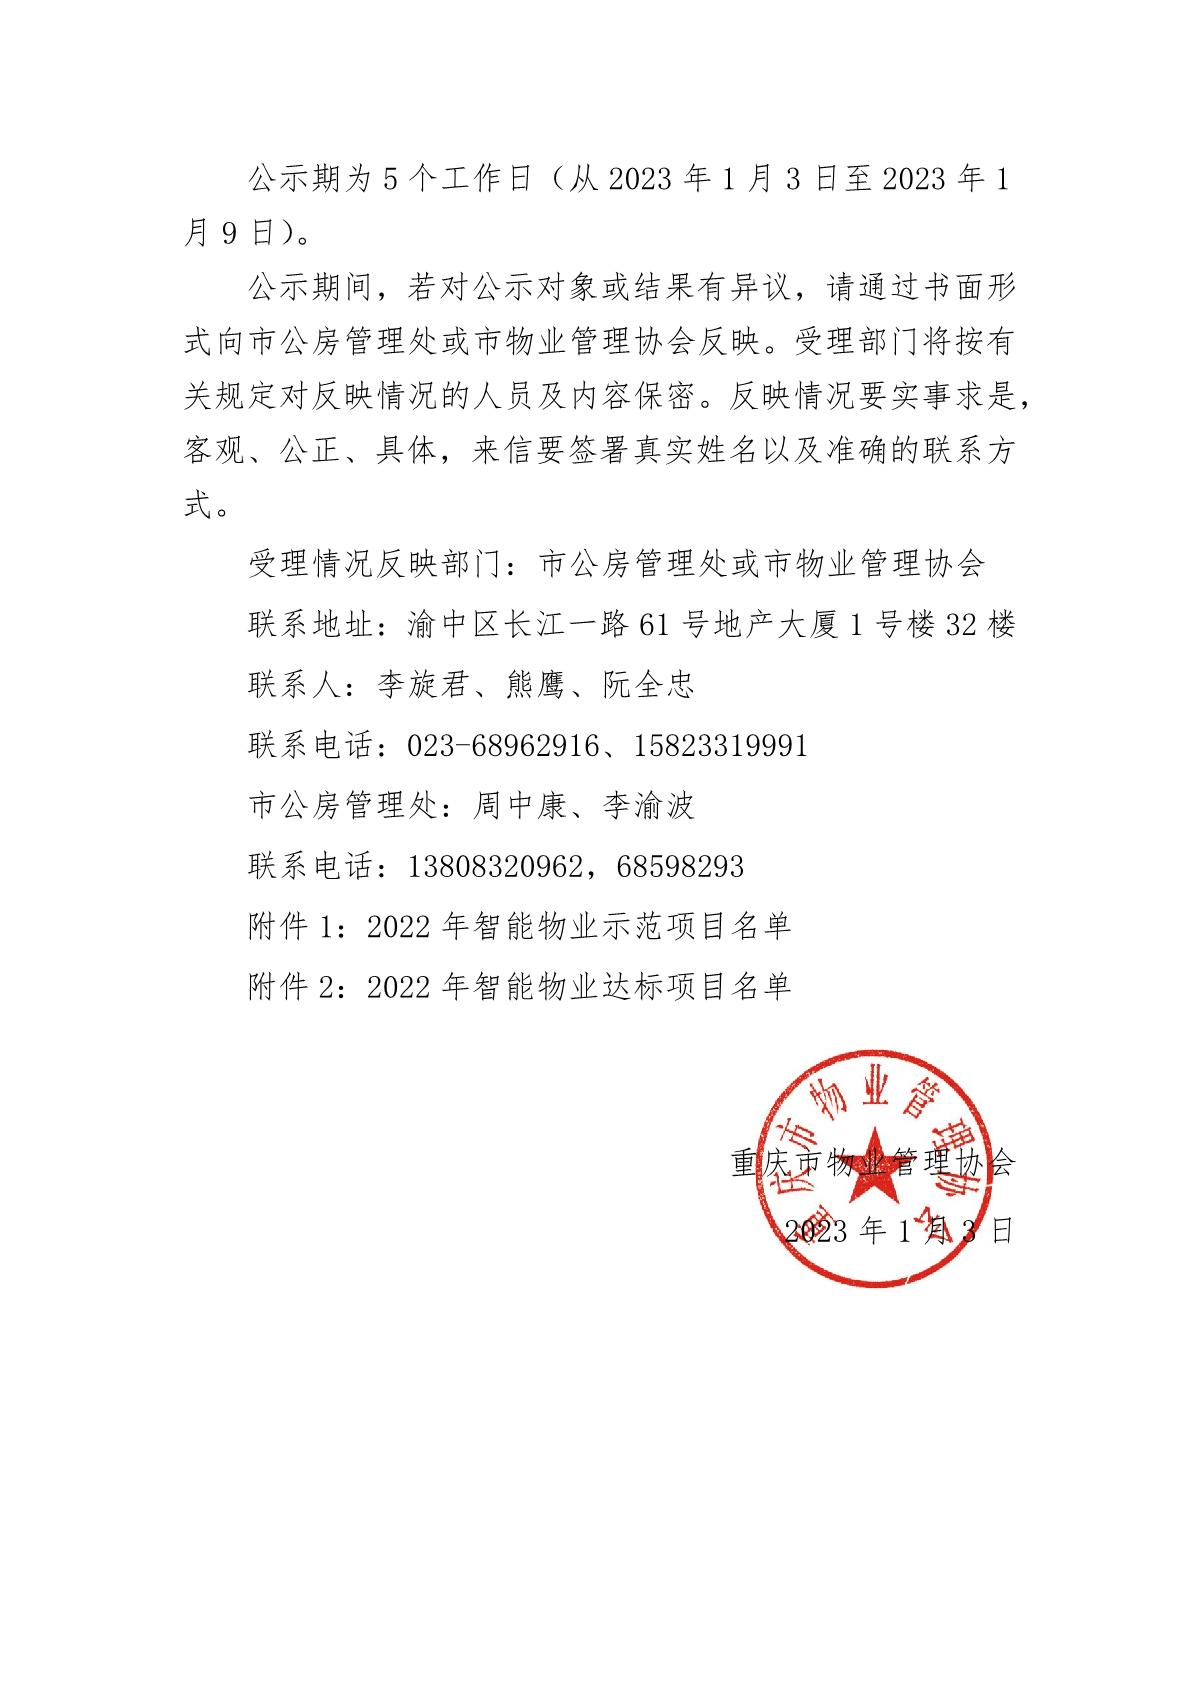 重庆市物业管理协会关于2022年智能物业项目结果的公示(2)_2.JPG